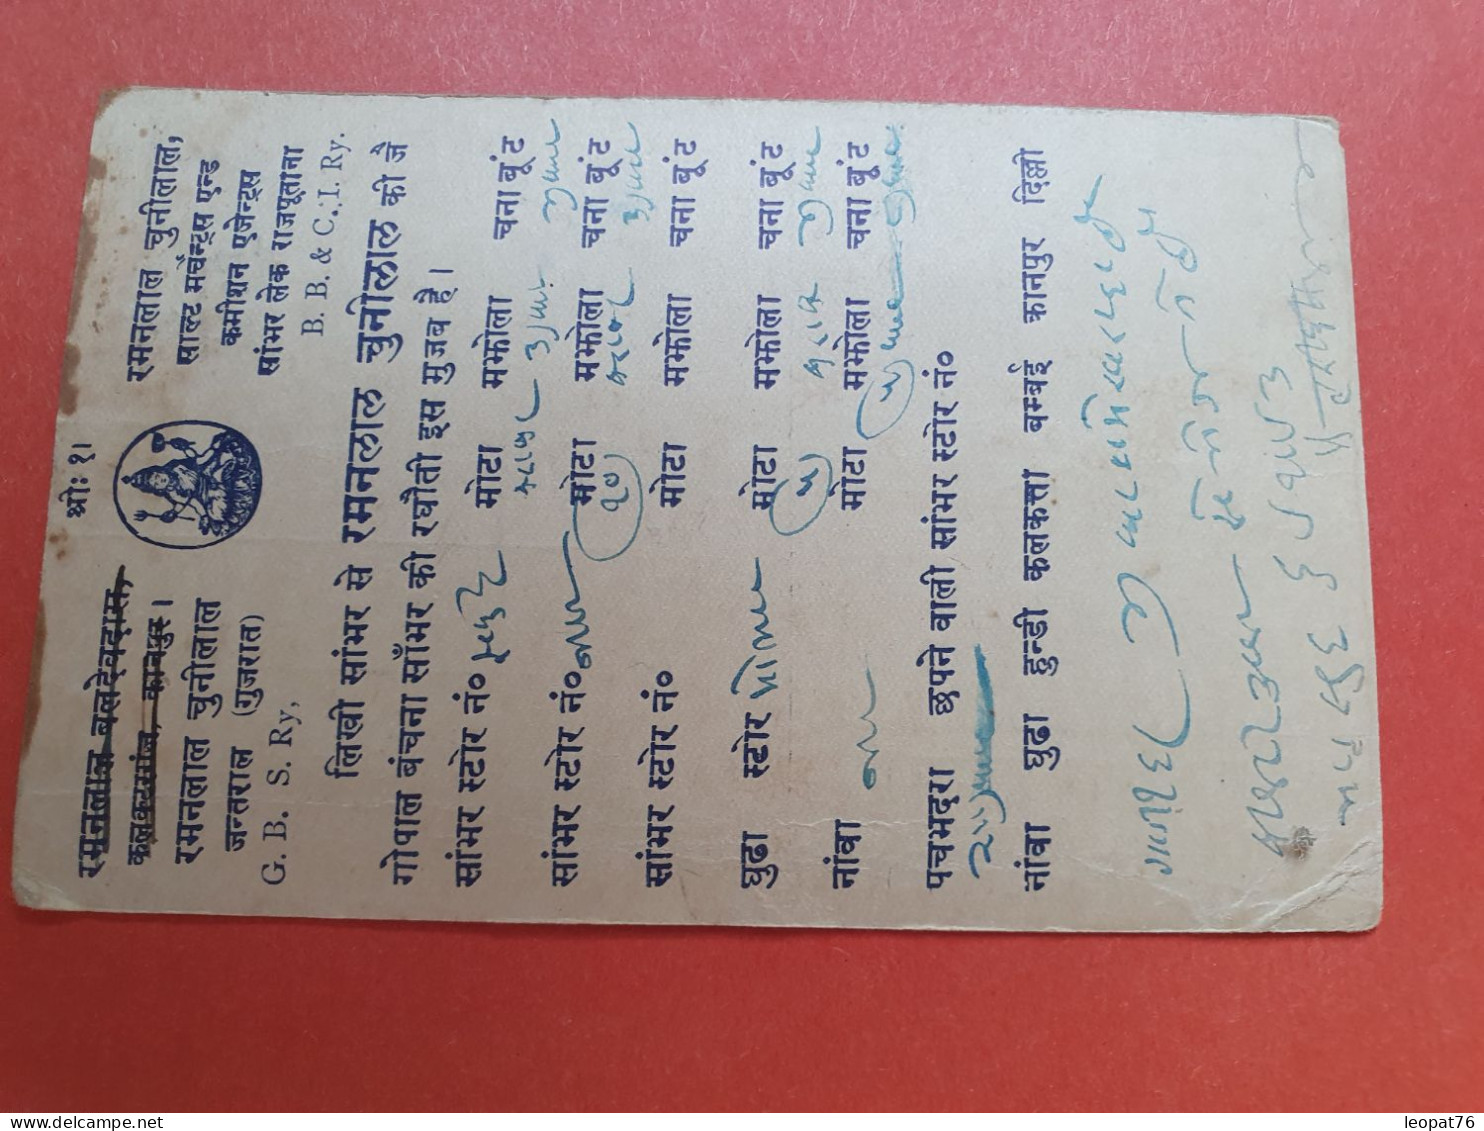 Indes Anglaises - Carte De Correspondance Voyagé En 1937 - Réf 1071 - 1936-47  George VI